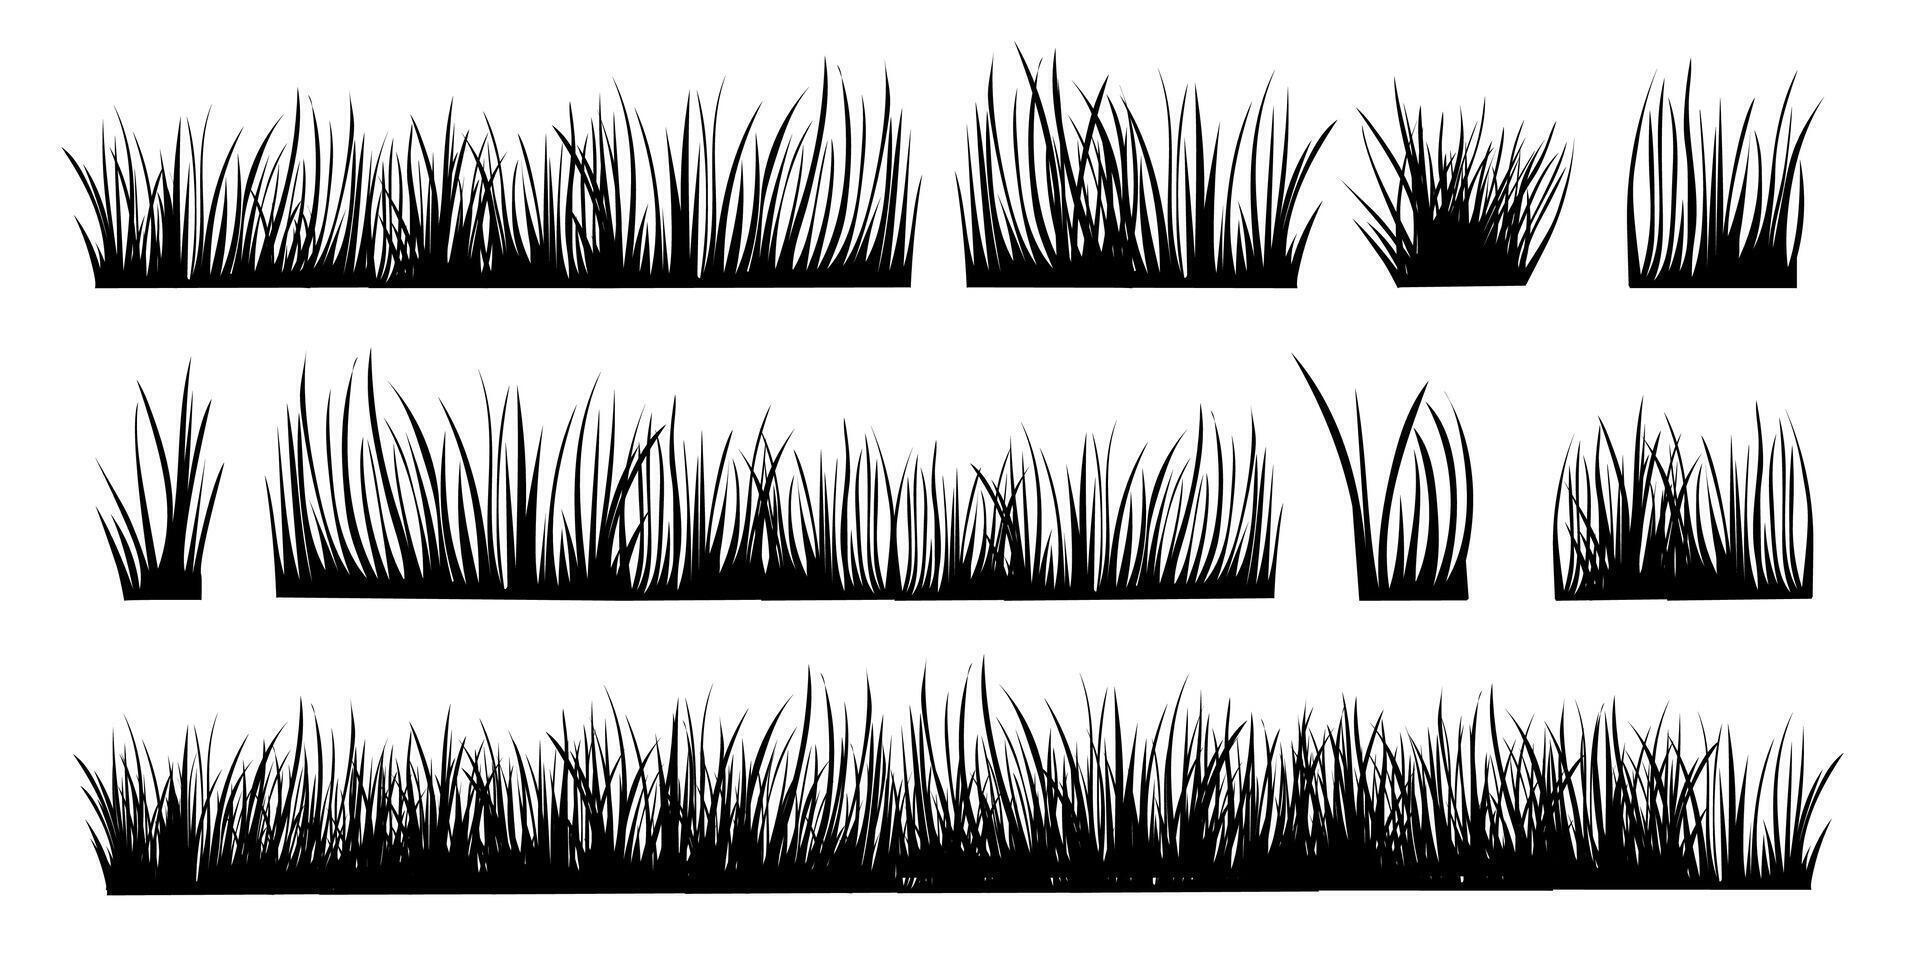 samling av gräs silhuetter för konstverk kompositioner. vår och sommar ört- uppsättning isolerat på vit bakgrund. vektor illustration.